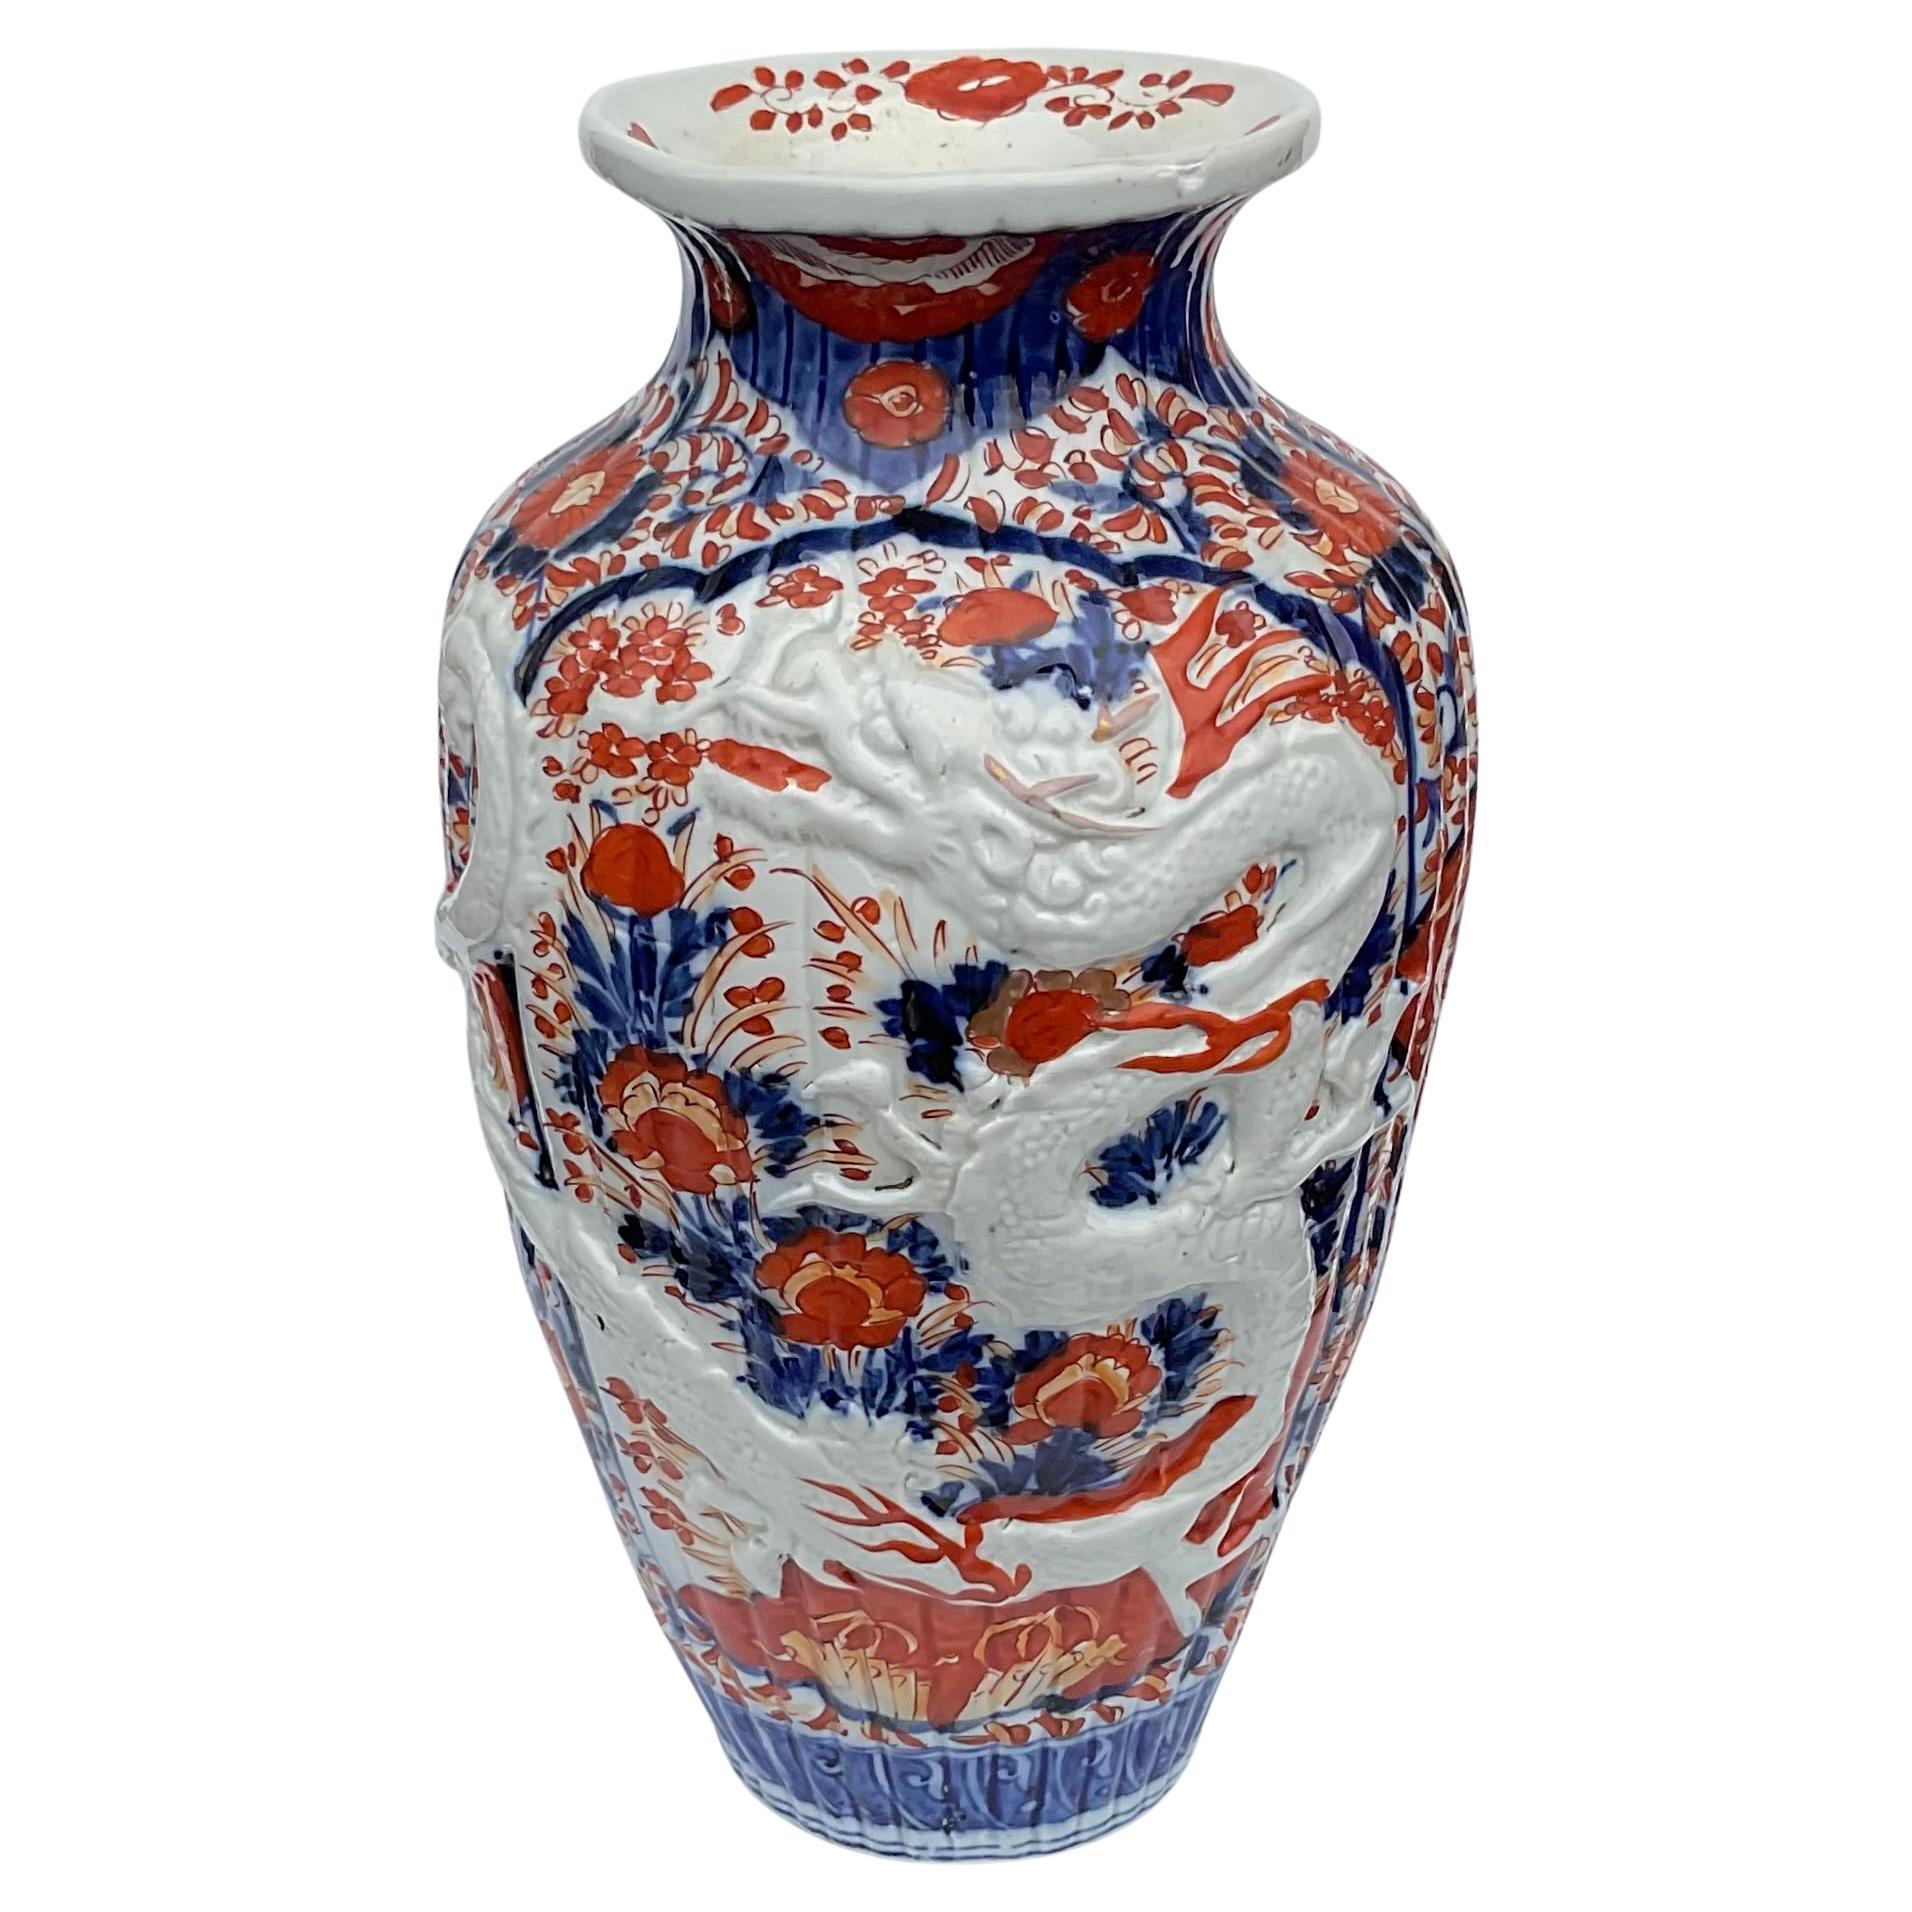 LARGE Meiji Era Japanese Imari Full Dragon Vase with Amazing Detail 